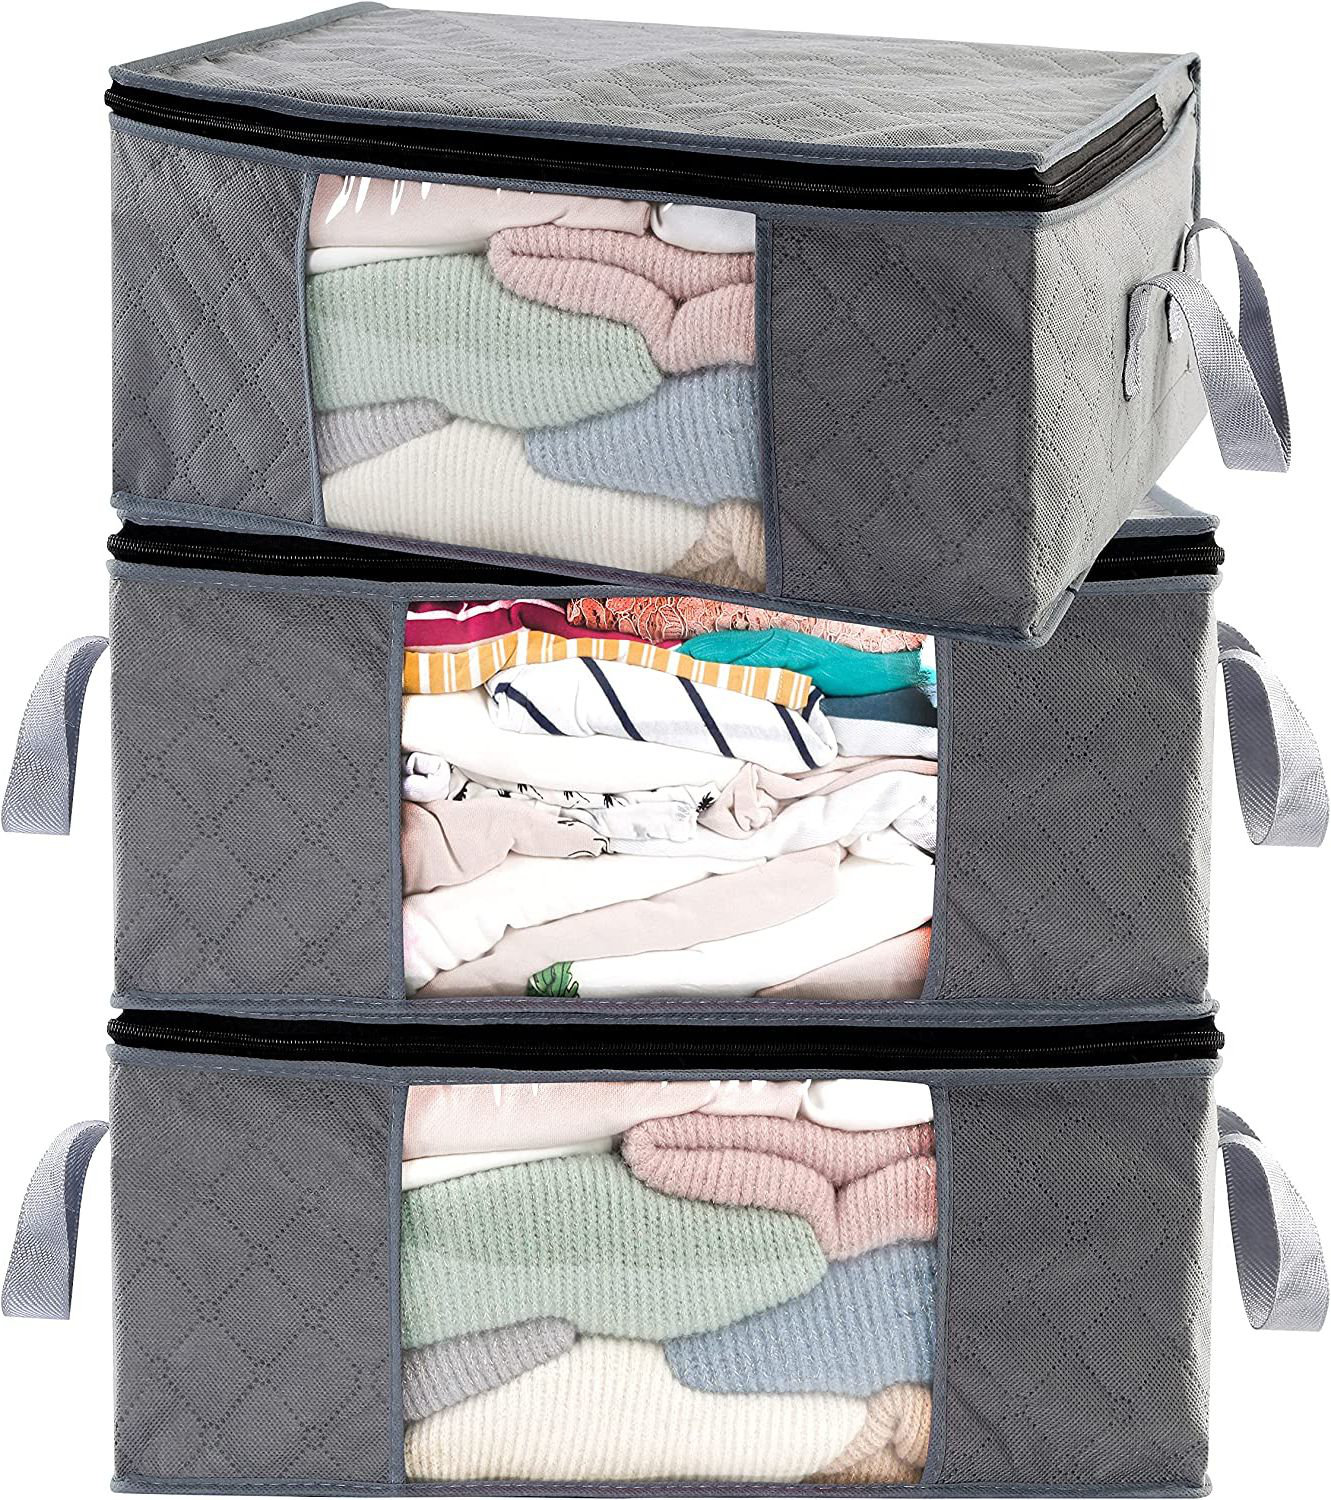 https://assets.wfcdn.com/im/64242061/compr-r85/2278/227827652/bin-bag-closet-organizer-sweater-clothes-organizer-3-pack.jpg